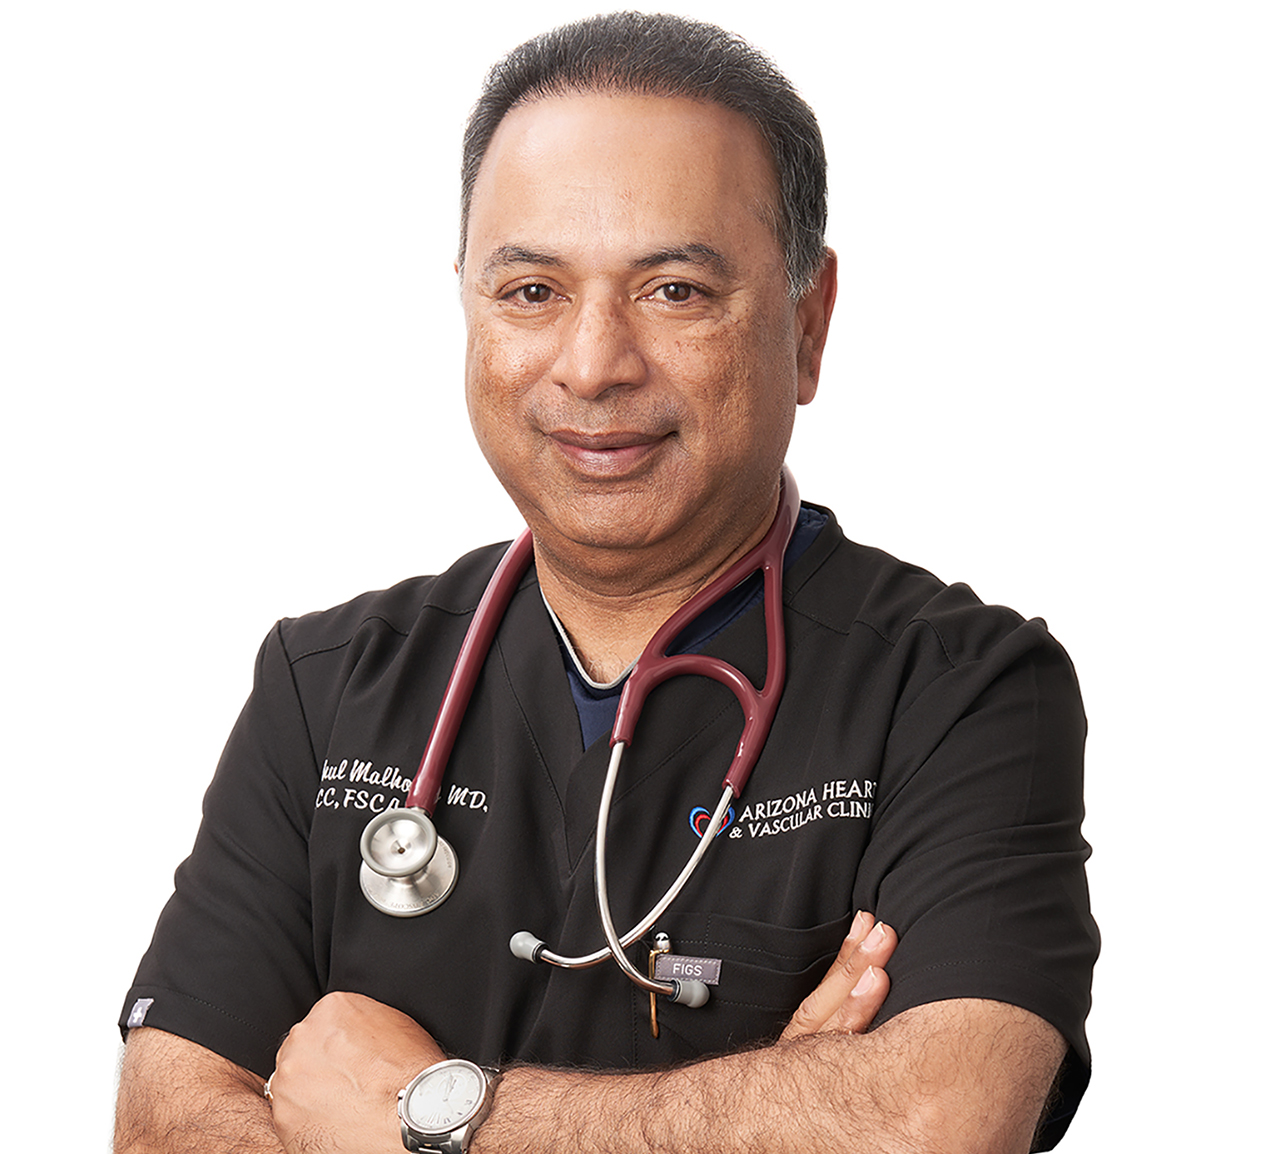 Dr. Rahul Malhotra - Arizona Heart and Vascular Clinic